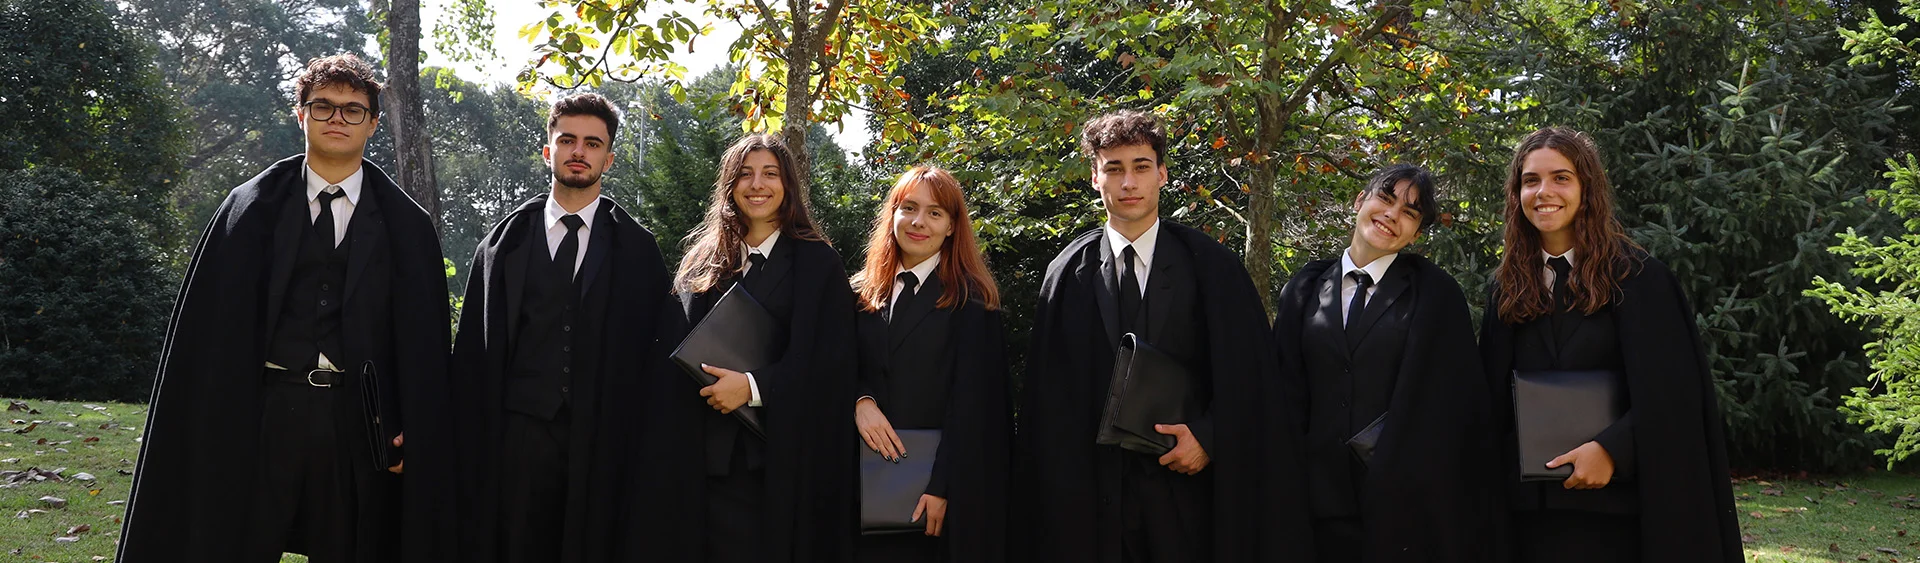 Estudantes trajados da Faculdade de Ciências da Universidade do Porto